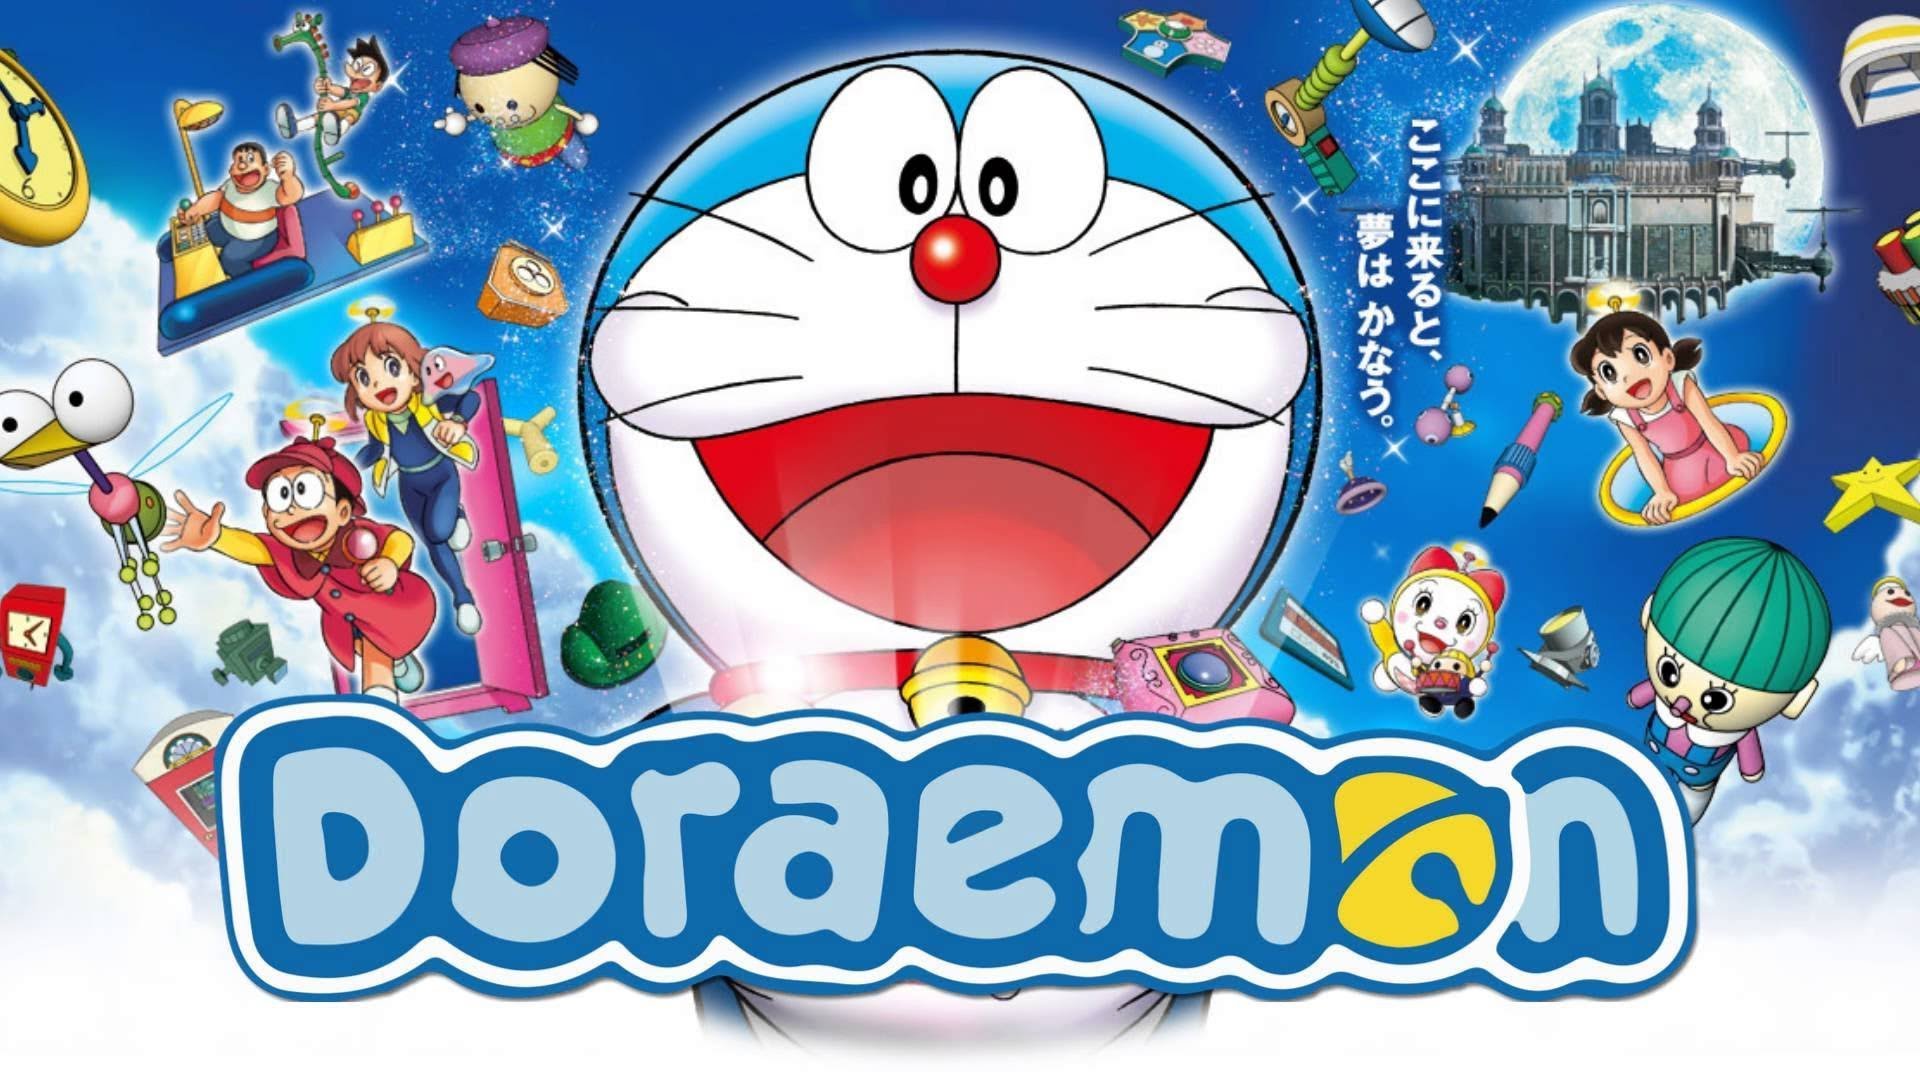 Doraemon: Tải về miễn phí hình ảnh Doraemon Nobita sử dụng súng kỳ diệu của mình - Doremon Tiếng Việt và trải nghiệm những trận đấu đầy kịch tính! Những hình ảnh này sẽ giúp bạn khám phá và tìm hiểu thêm về thế giới đầy sáng tạo và những siêu năng lực của các nhân vật. Hãy tải về ngay để tham gia vào những cuộc phiêu lưu tuyệt vời!